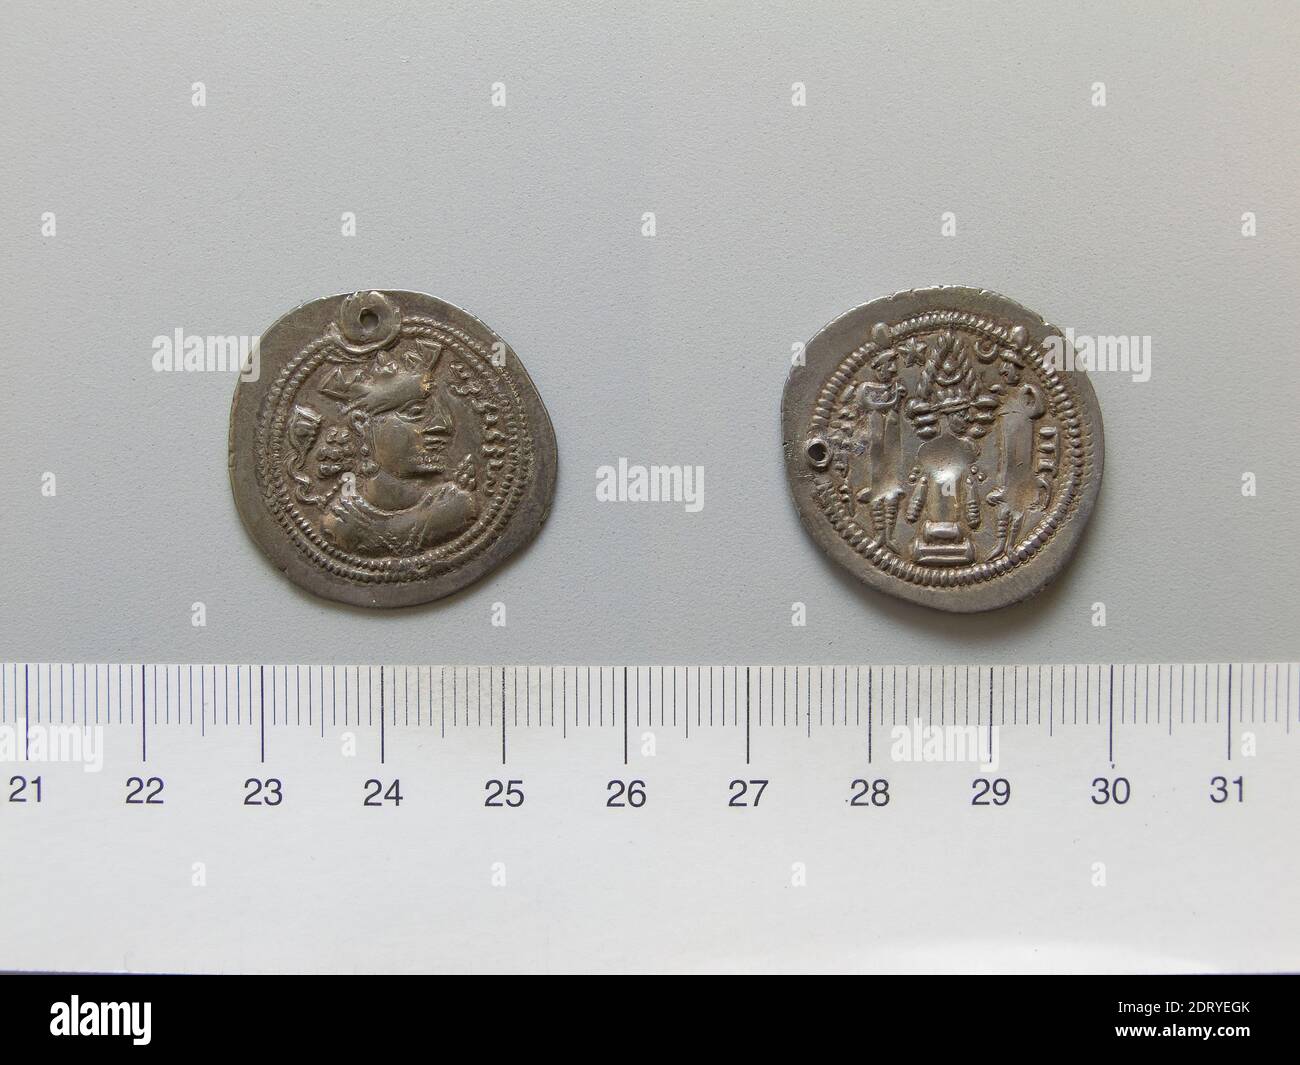 Herrscher: Firoz iMINT: Persien, 1 Drachme von Firoz I. aus Persien, 459–86, Silber, 4.13 g, 3:00, 27.7 mm, Made in Persien, Persisch, 5. Jahrhundert, Numismatik Stockfoto